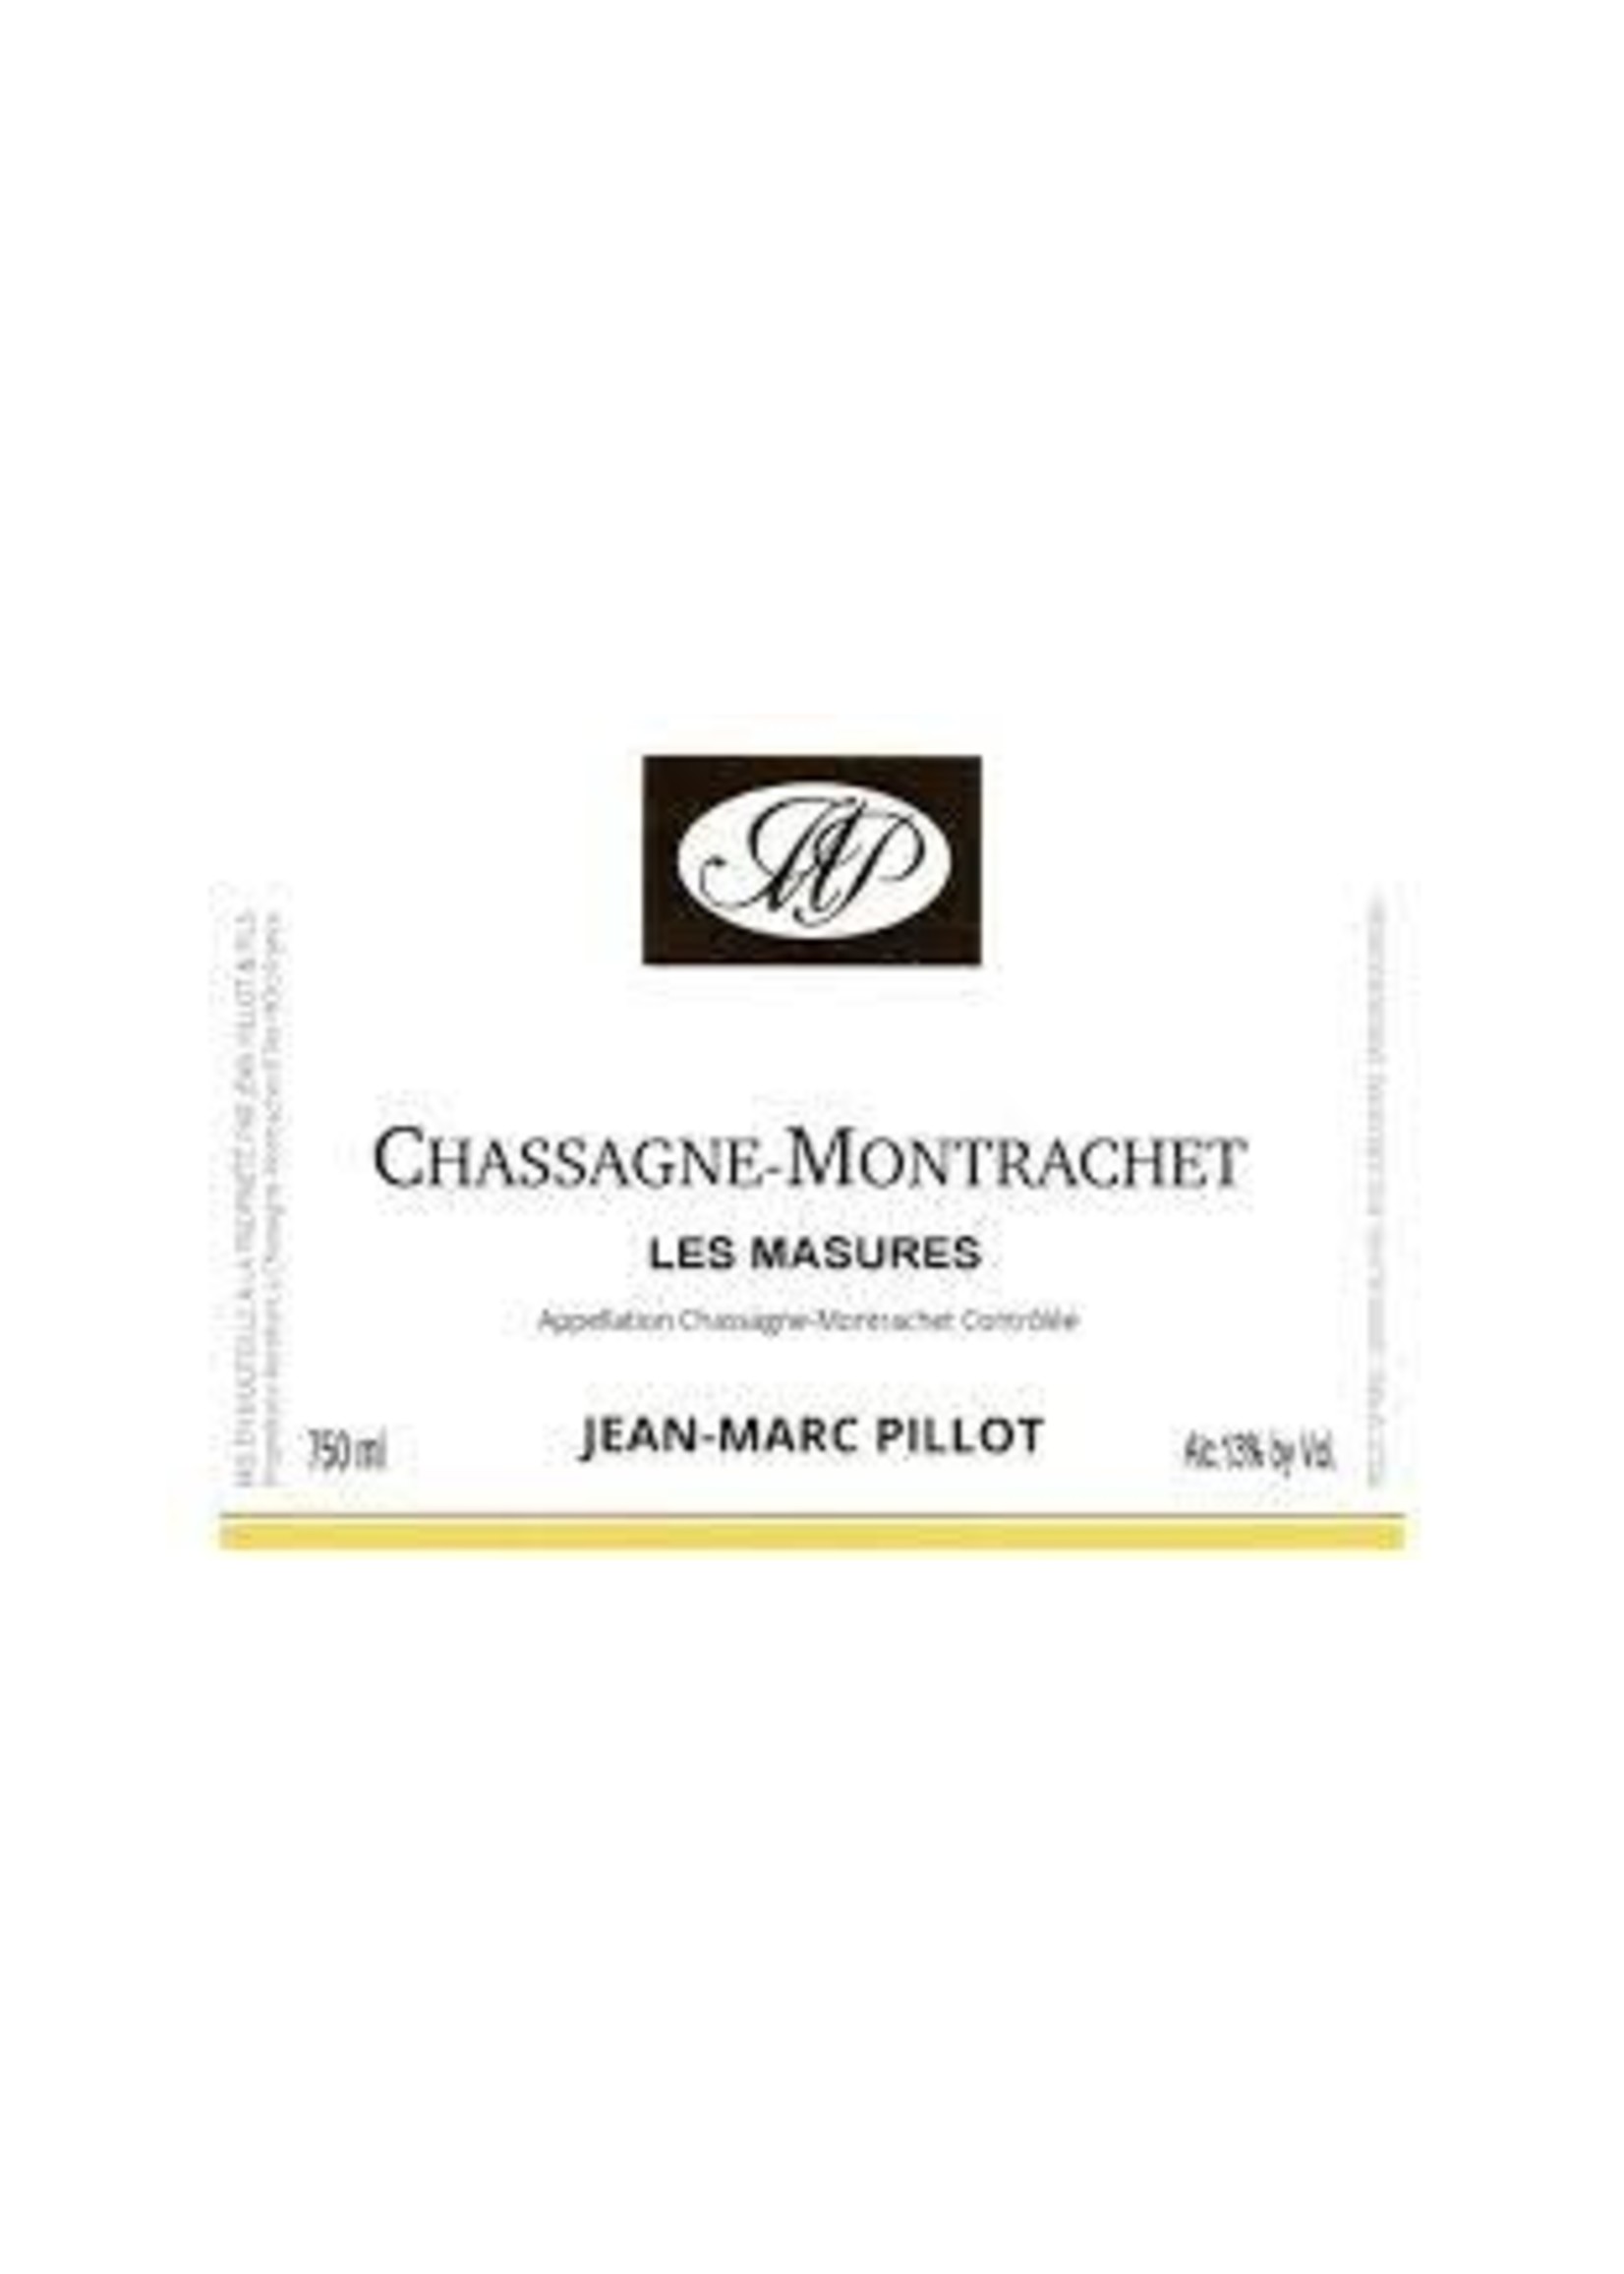 Jean-Marc Pillot 2019 Chassagne-Montrachet Les Masures 750ml